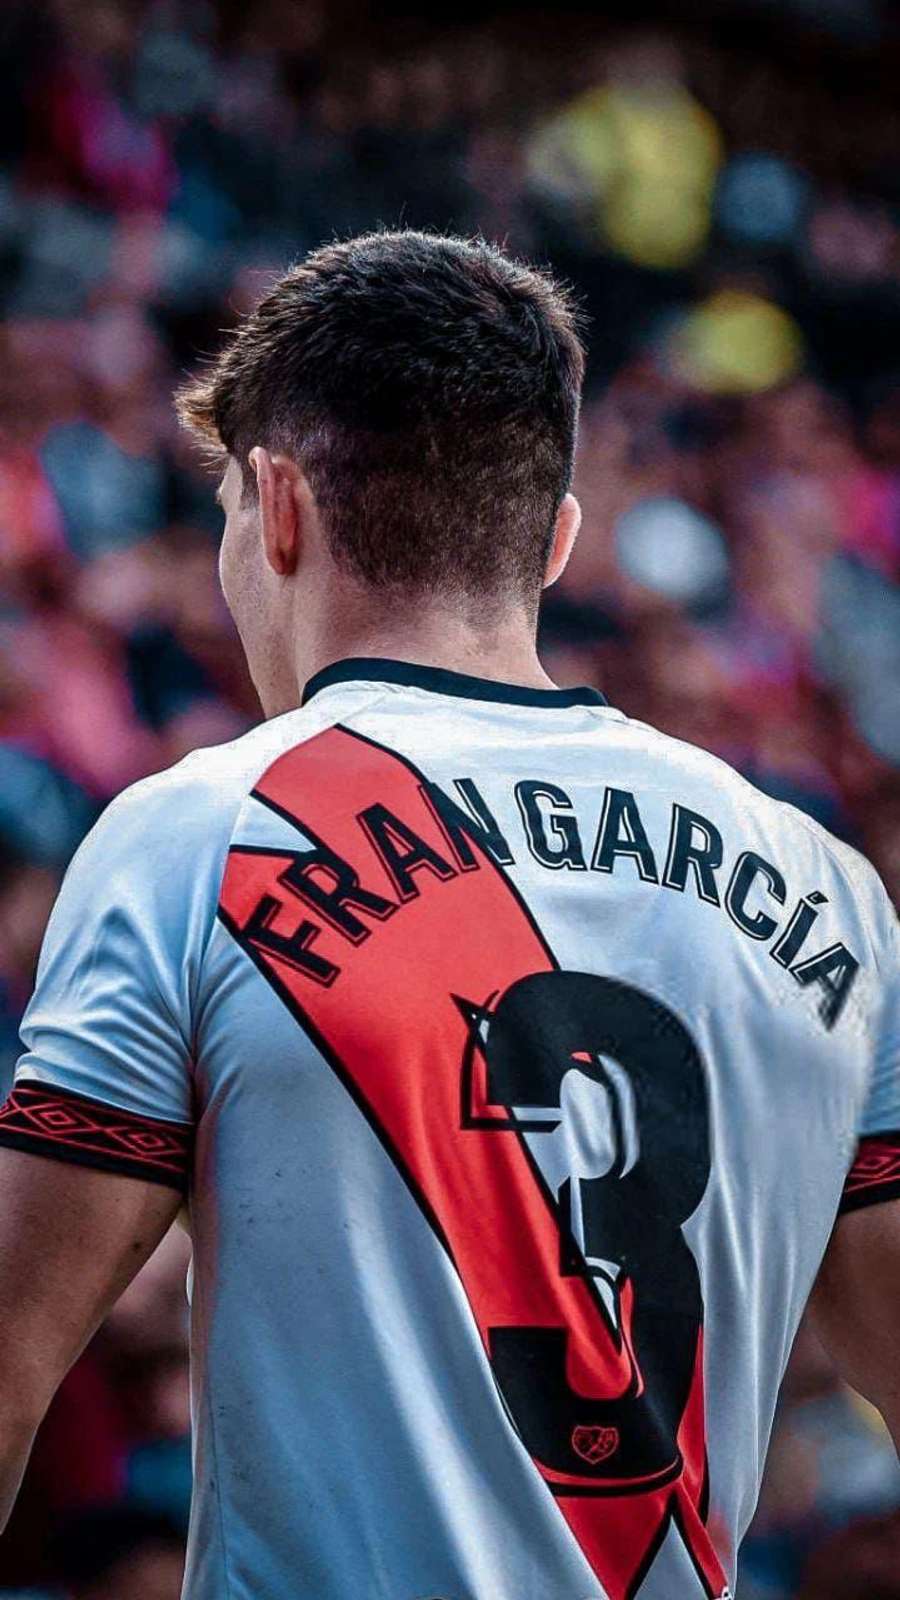 Fran García es uno de los mejores laterales izquierdos españoles